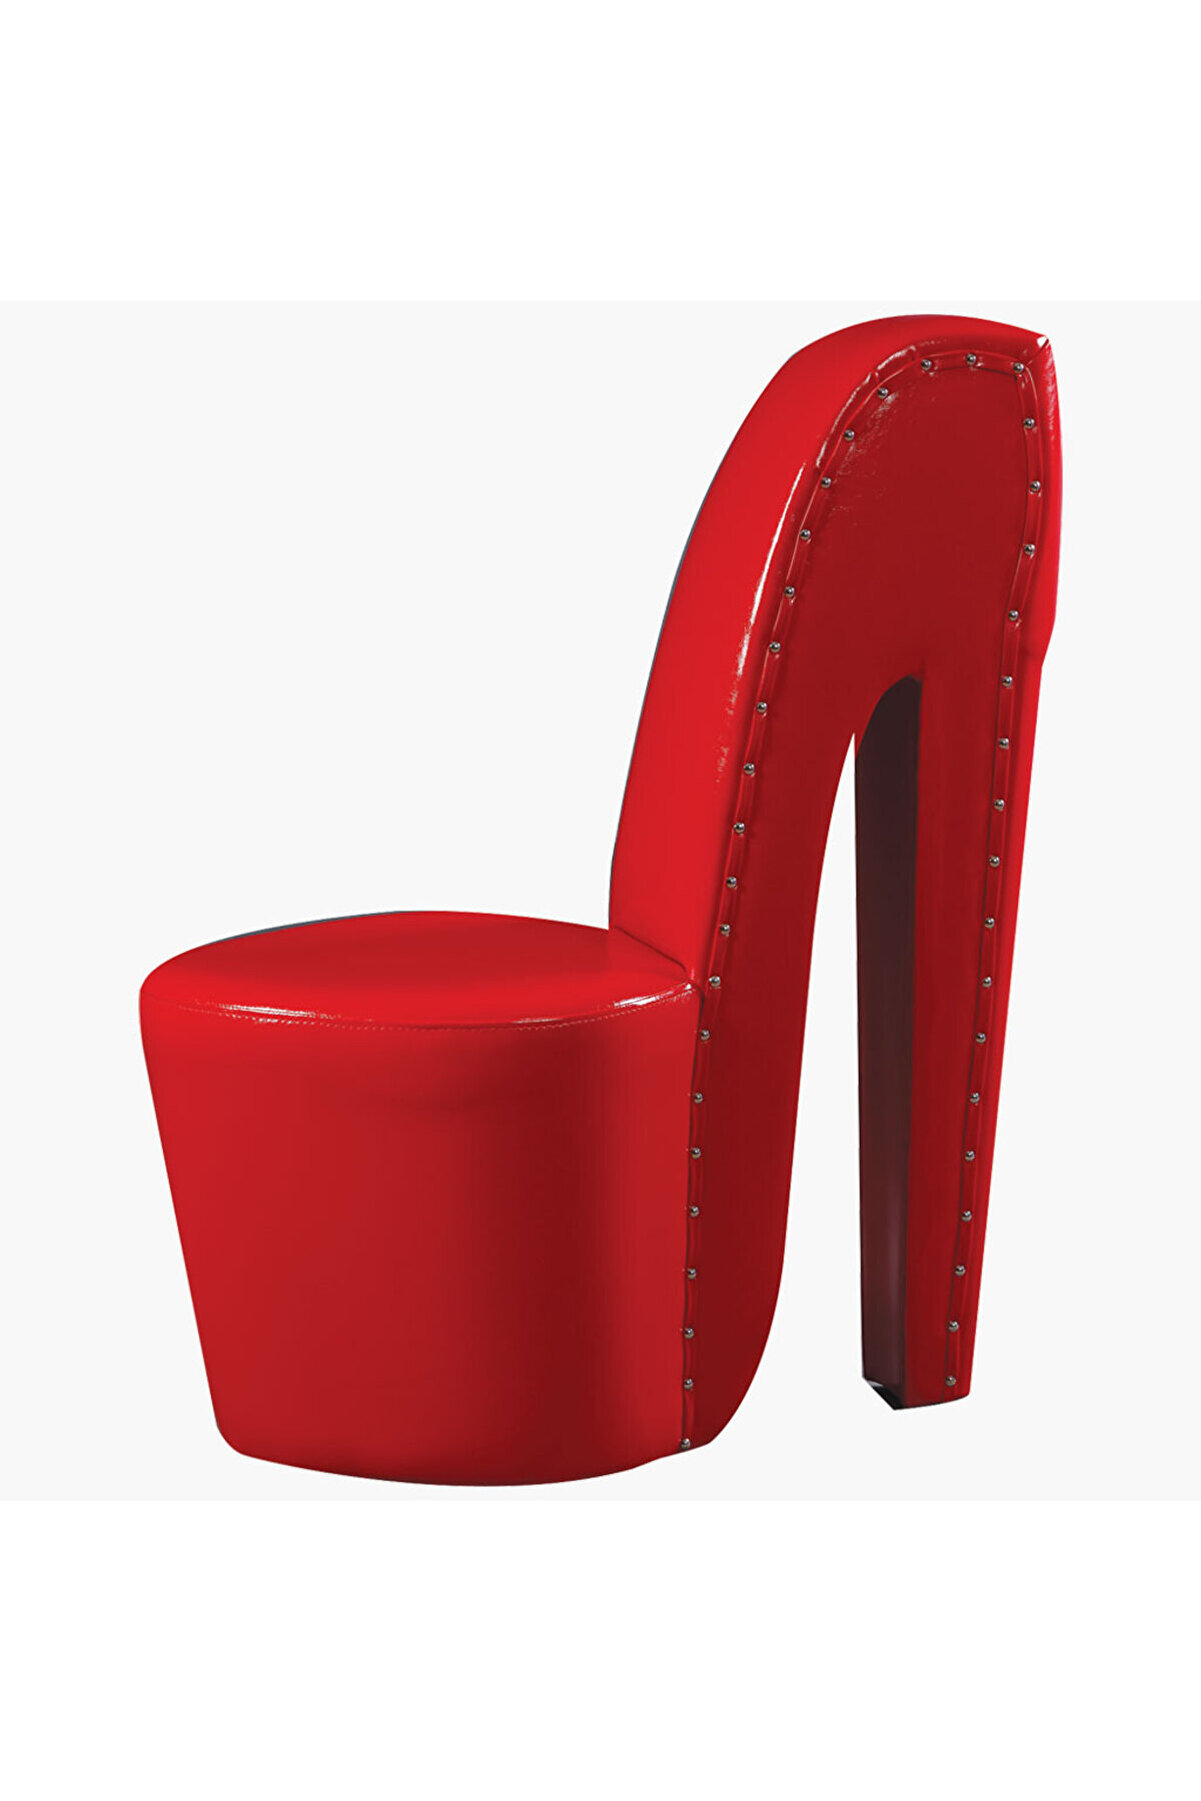 Ankara Mobilya Puf Çizme Topuk Ayakkabı Model Kırmızı Rugan Kırmızı Suni Deri Kayın El Yapım